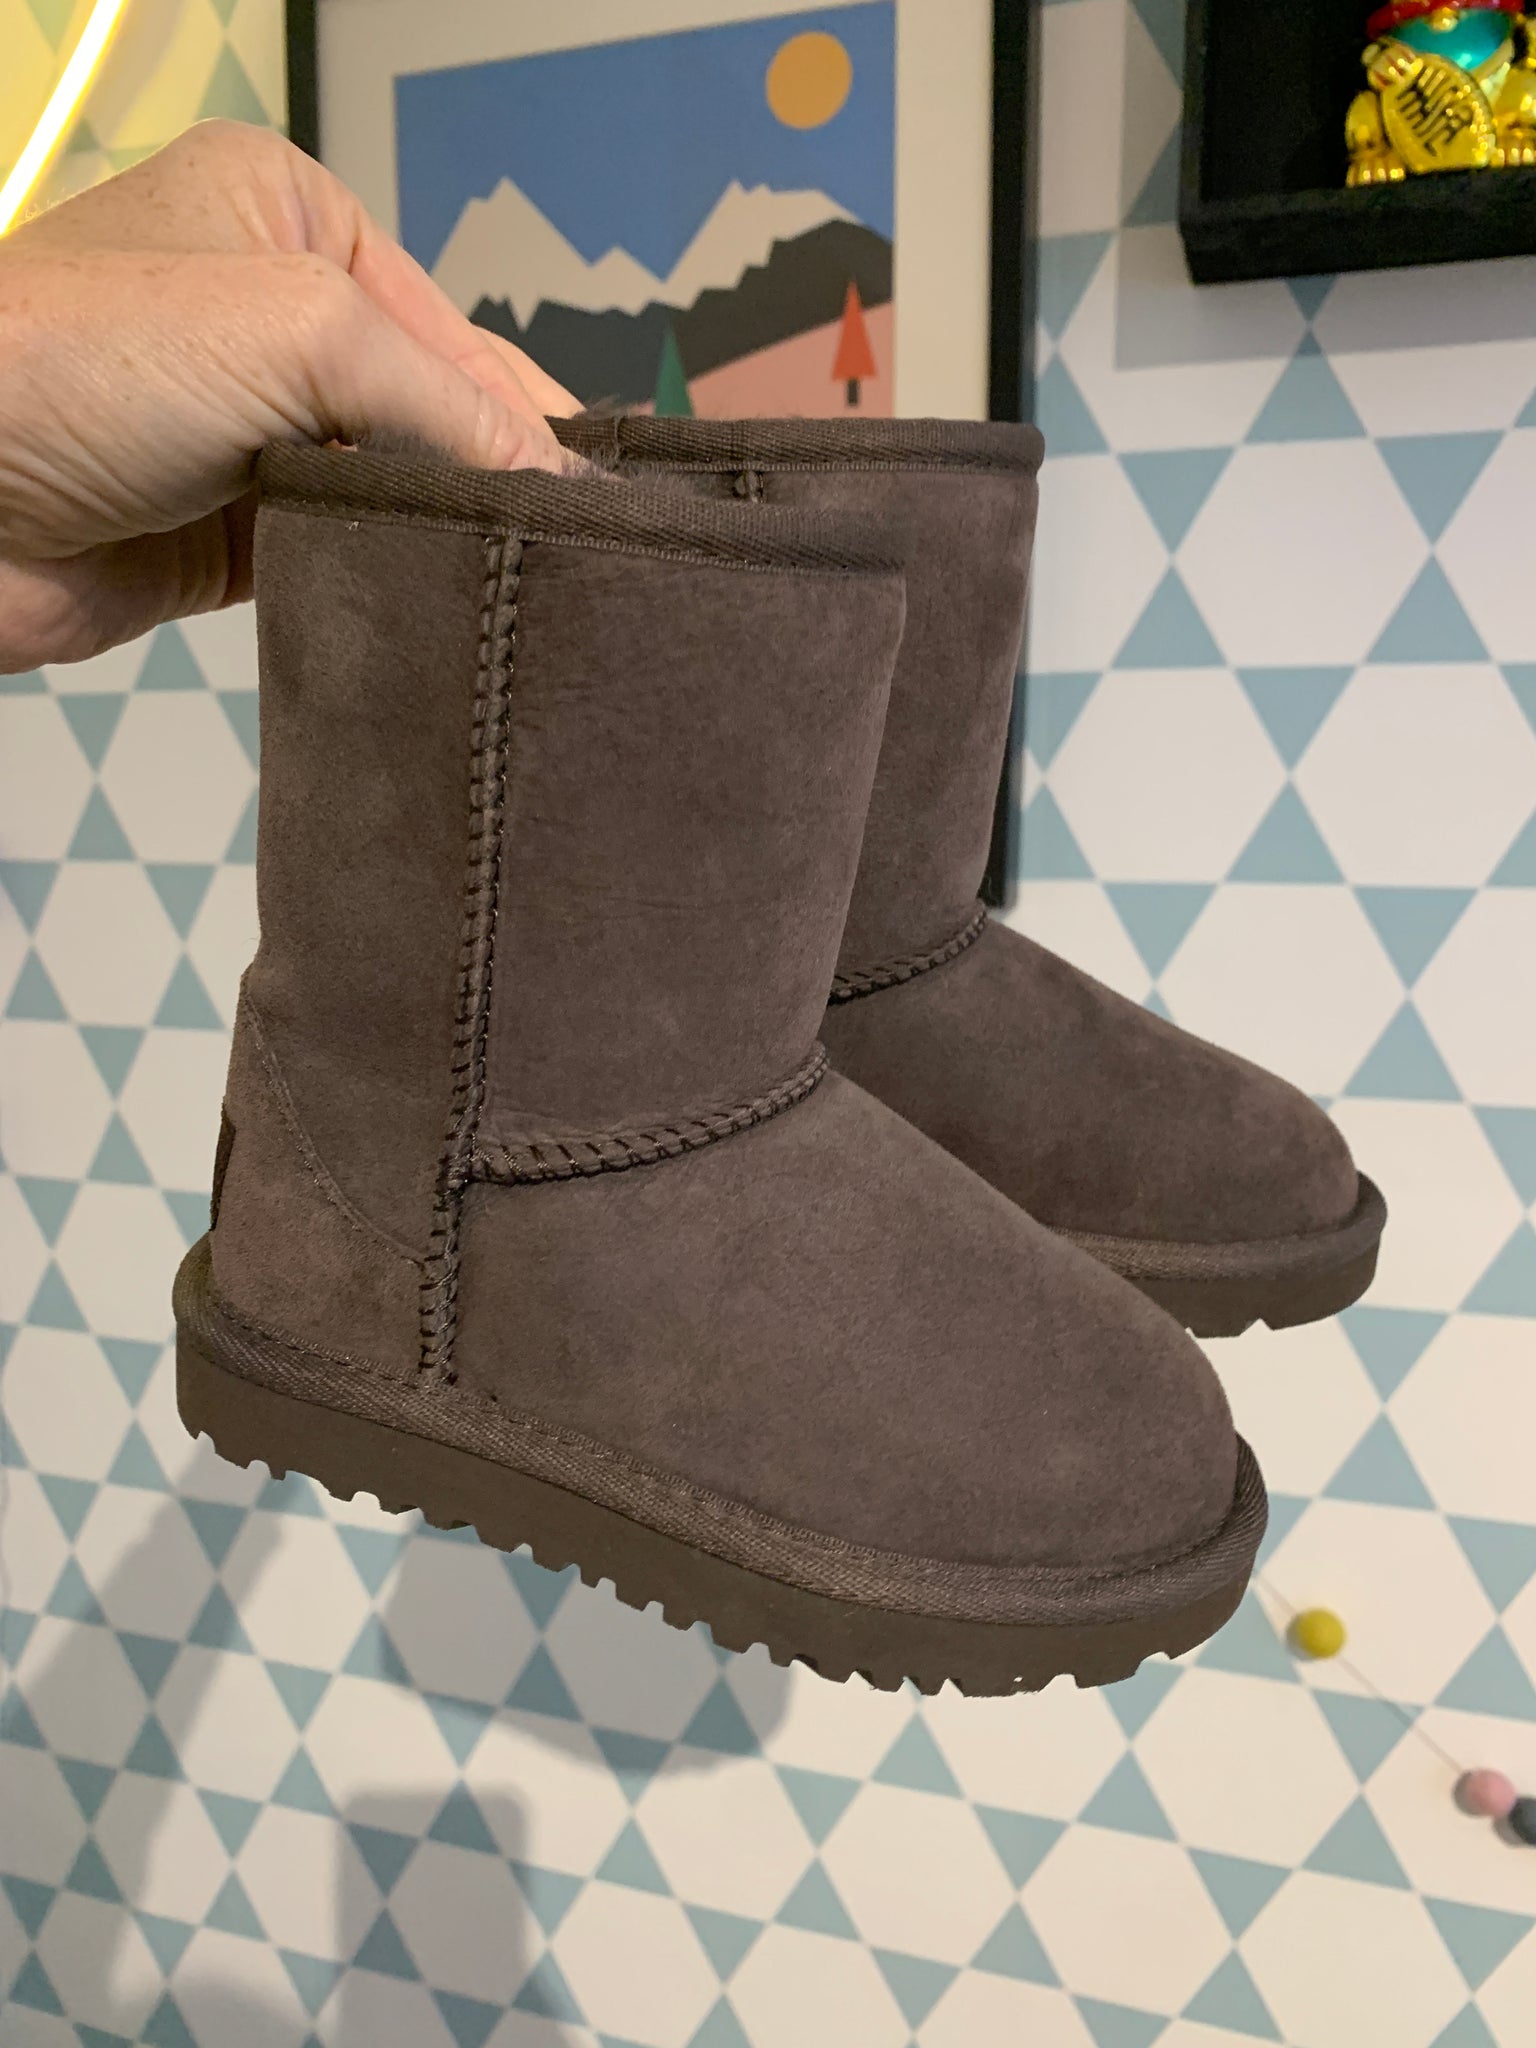 grens Duur scheerapparaat UGG classic bruin – flo shoes for kids